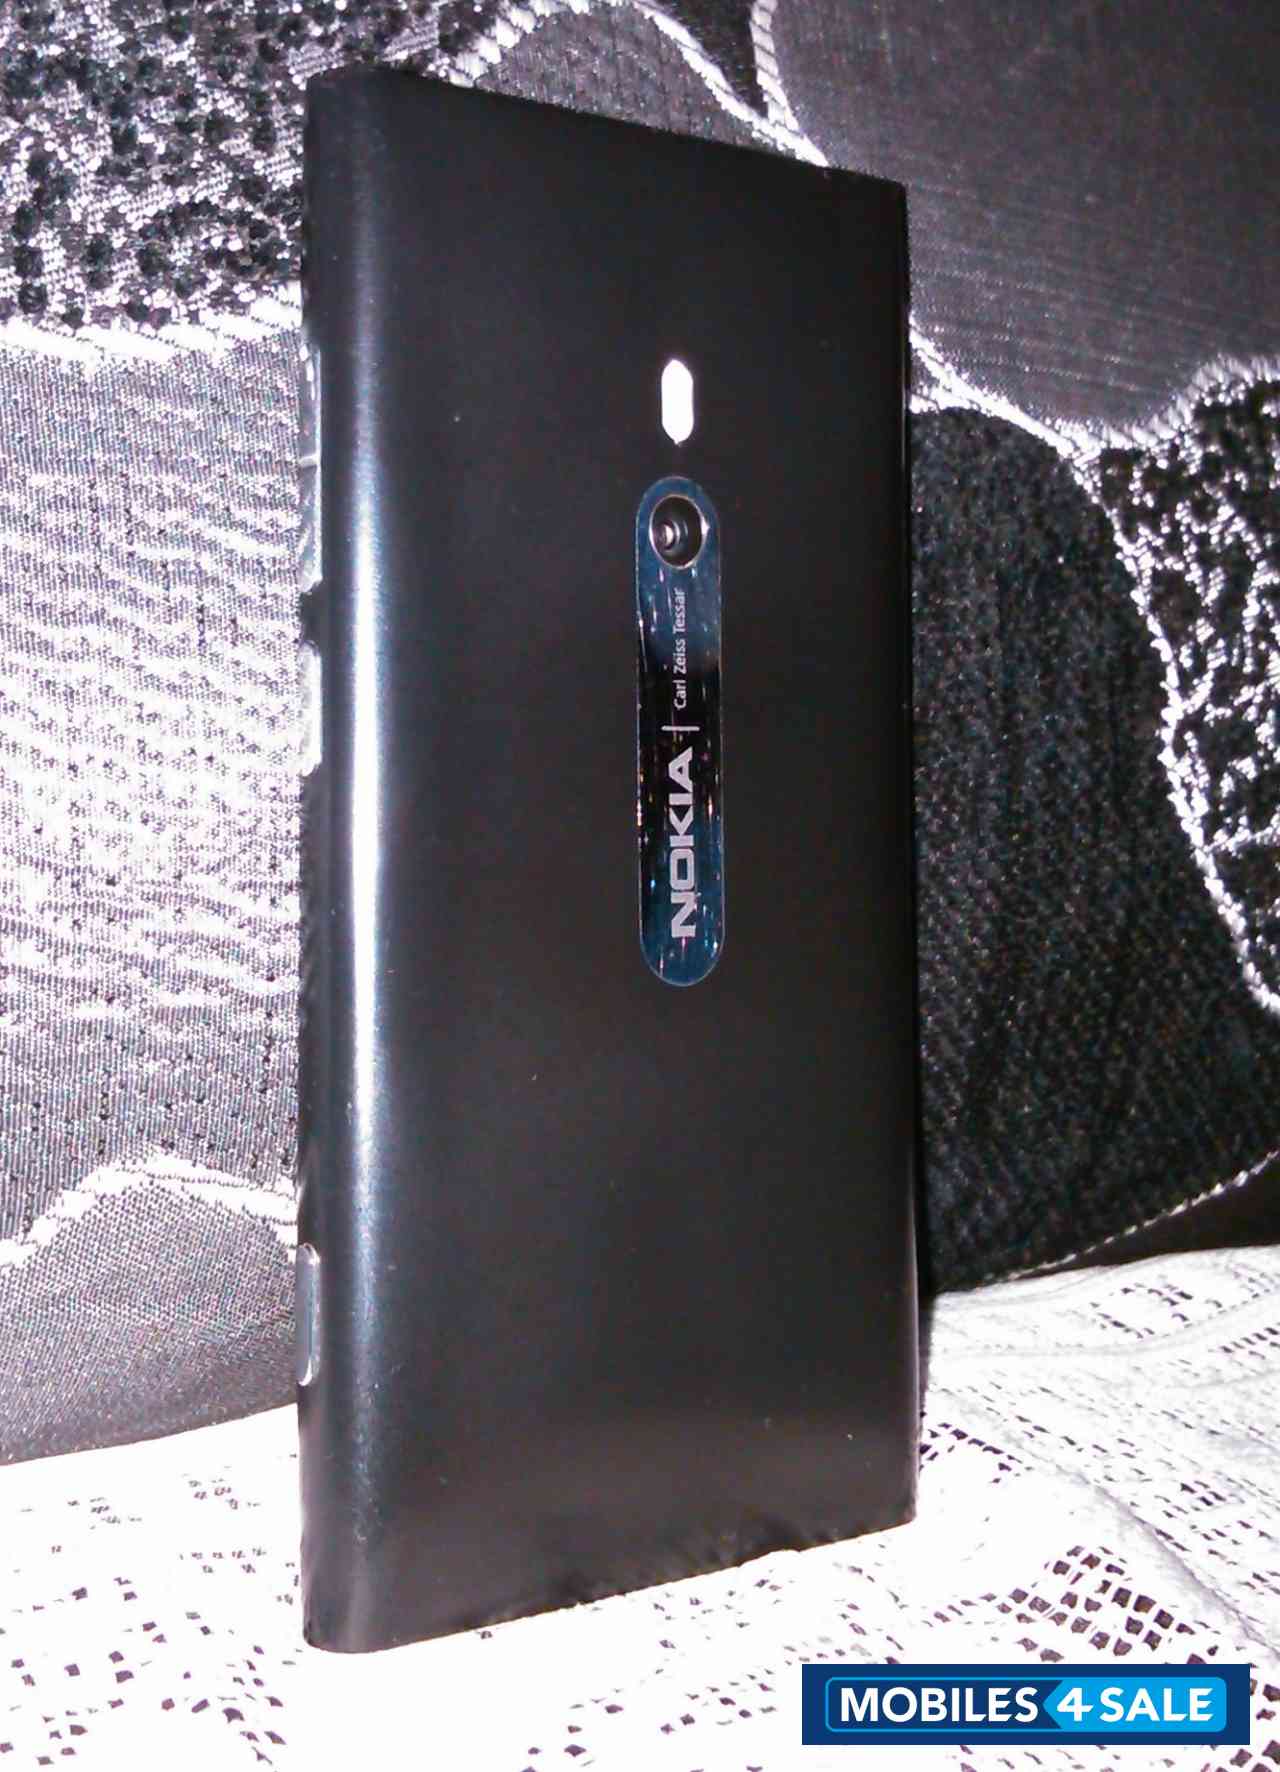 Black Nokia Lumia 800